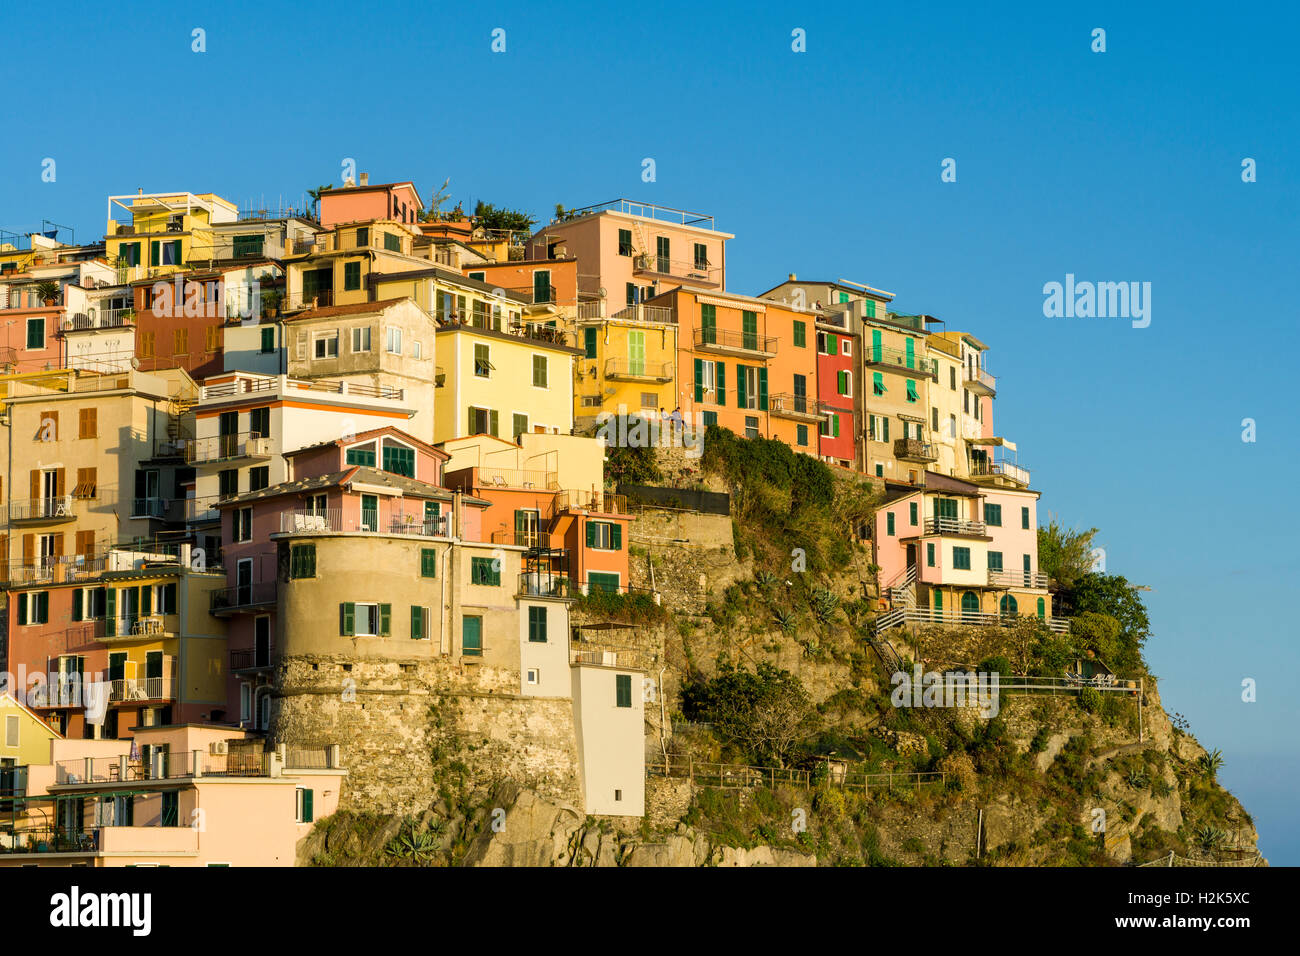 Case colorate di Manarola città stipati su una collina sulla costa del Mare Mediterraneo, Riomaggiore, Liguria, Italia Foto Stock